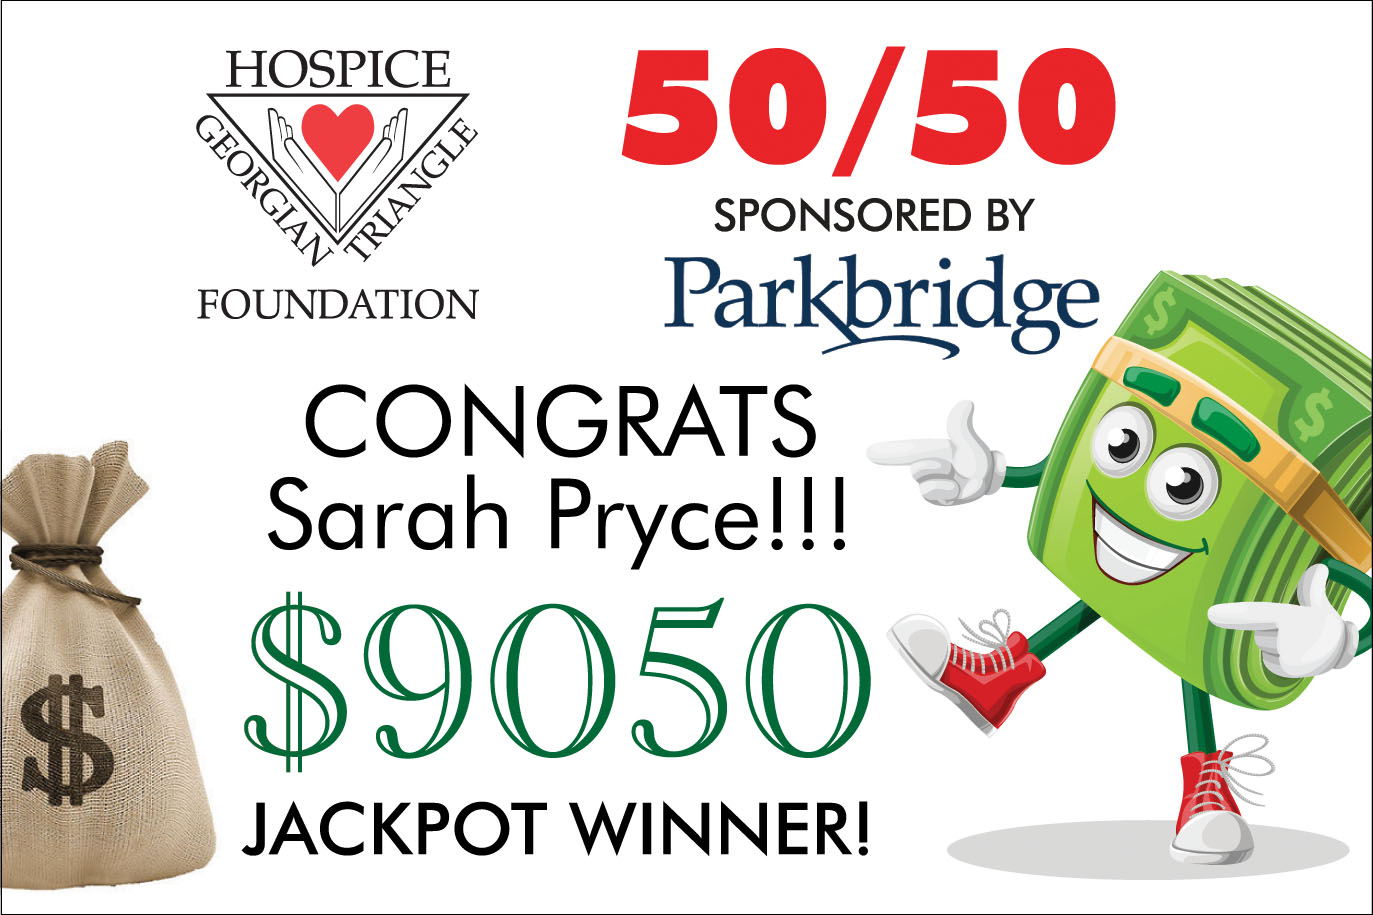 Congrats Sarah Pryce $9050 jackpot winner!